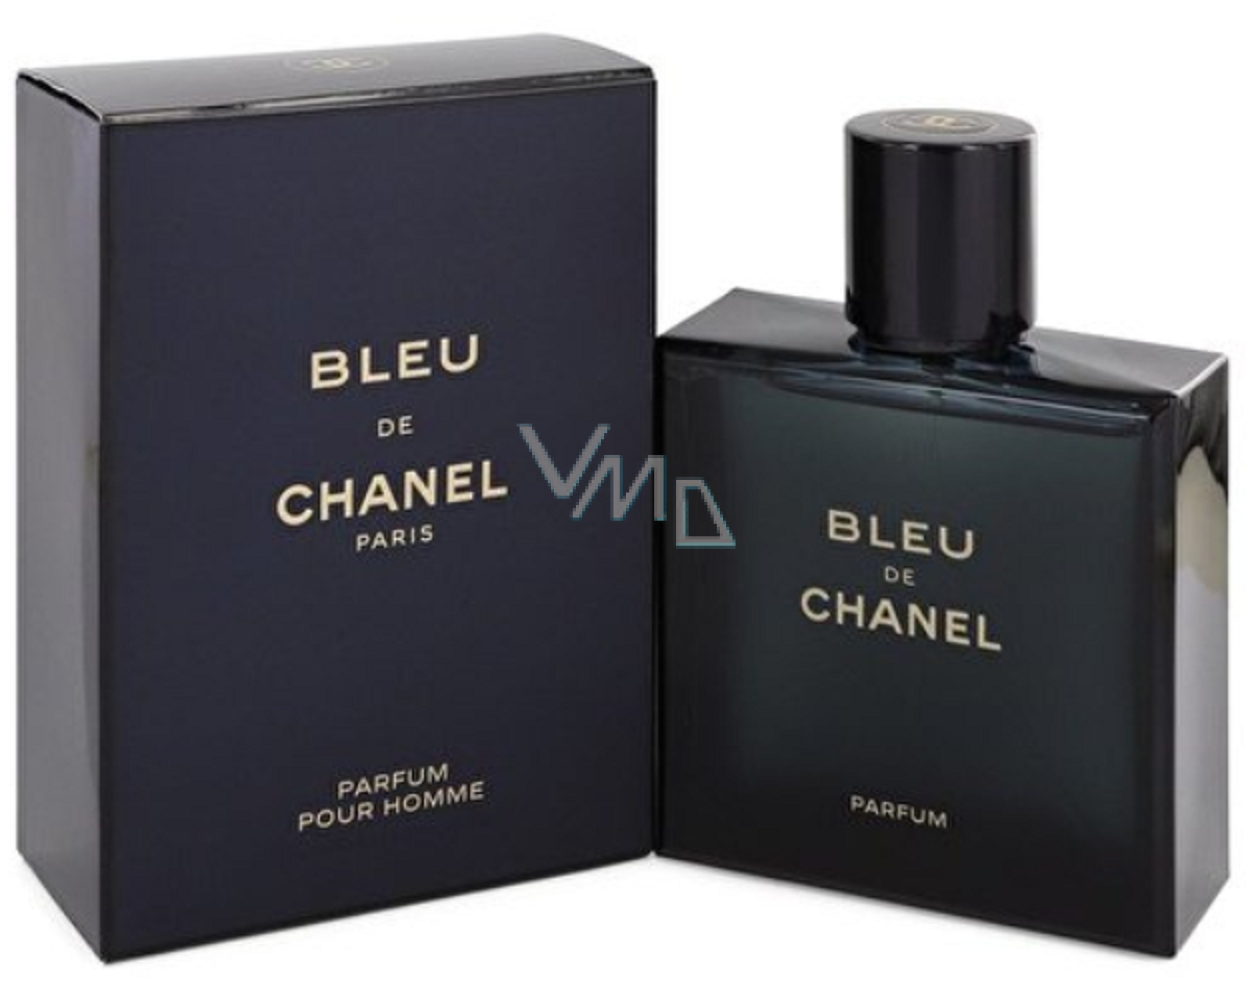 Chanel Bleu de Chanel Perfume for Men perfume for men 150 ml - VMD  parfumerie - drogerie